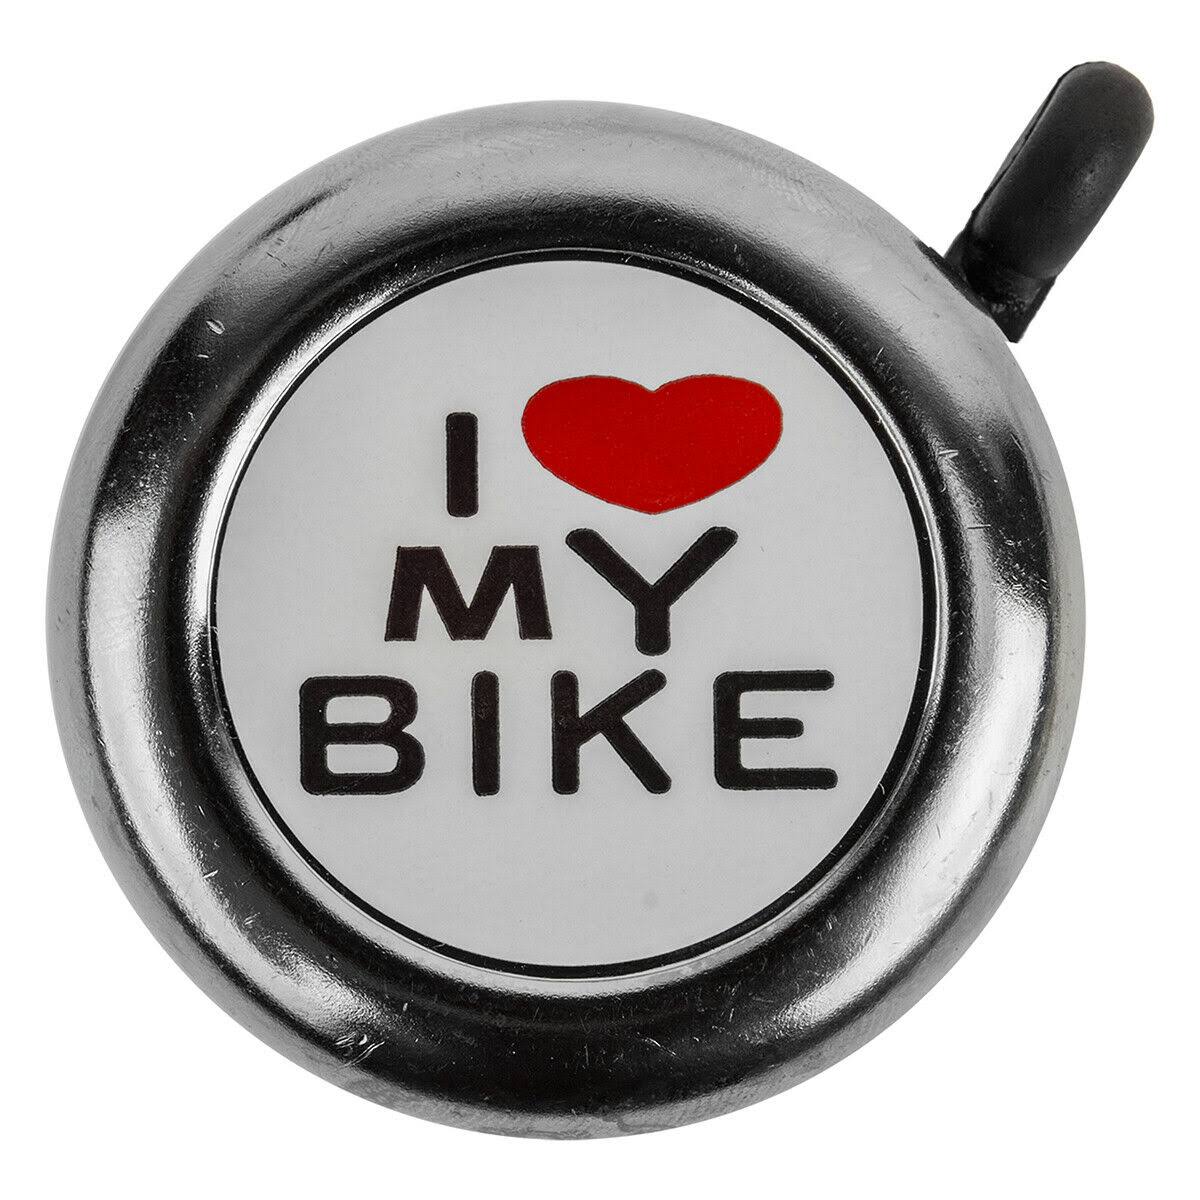 Sunlite Bicycle Handlebar Bell - Chrome Plated, I Love My Bike